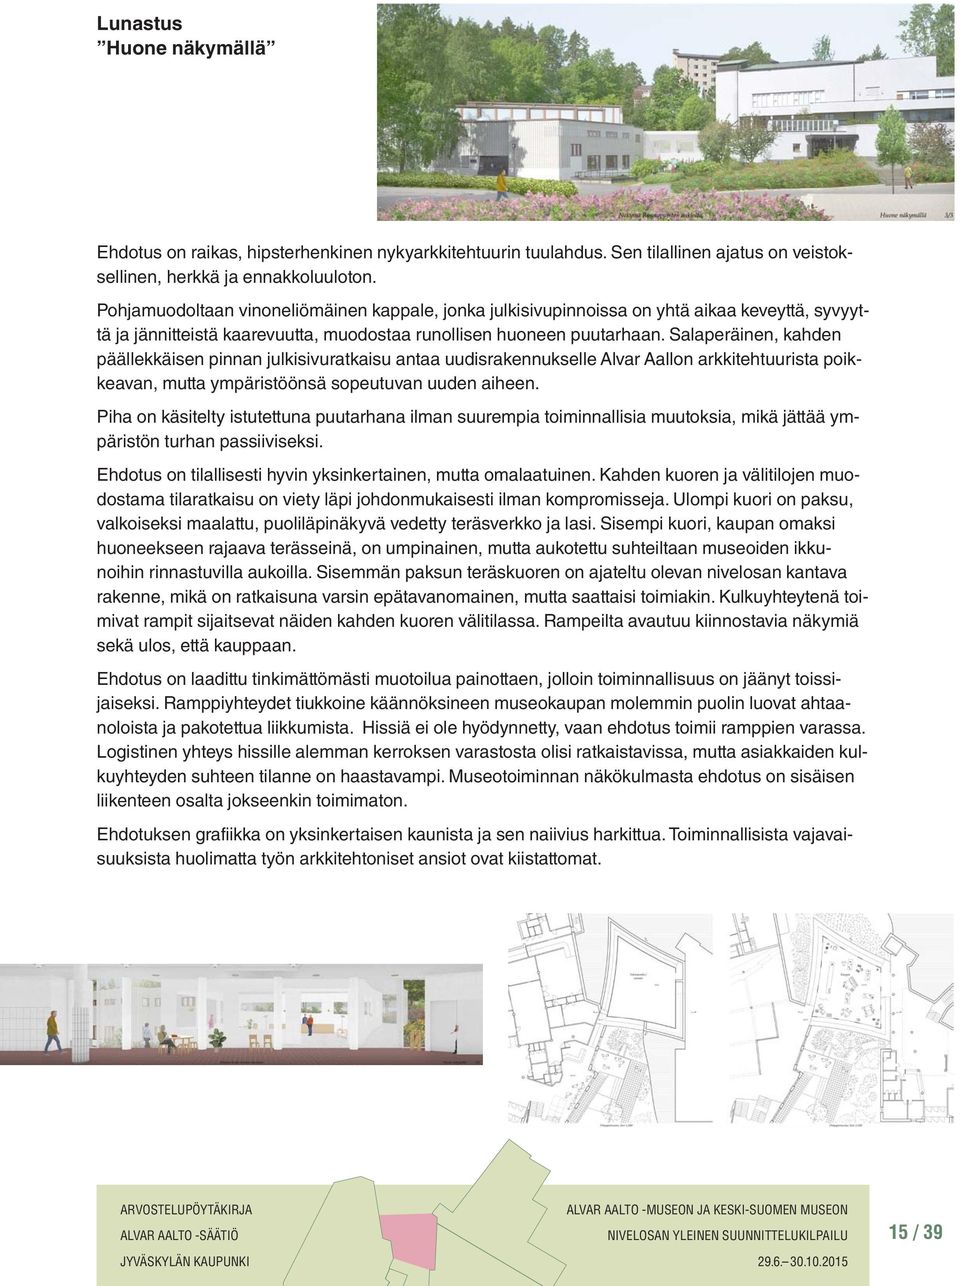 Salaperäinen, kahden päällekkäisen pinnan julkisivuratkaisu antaa uudisrakennukselle Alvar Aallon arkkitehtuurista poikkeavan, mutta ympäristöönsä sopeutuvan uuden aiheen.